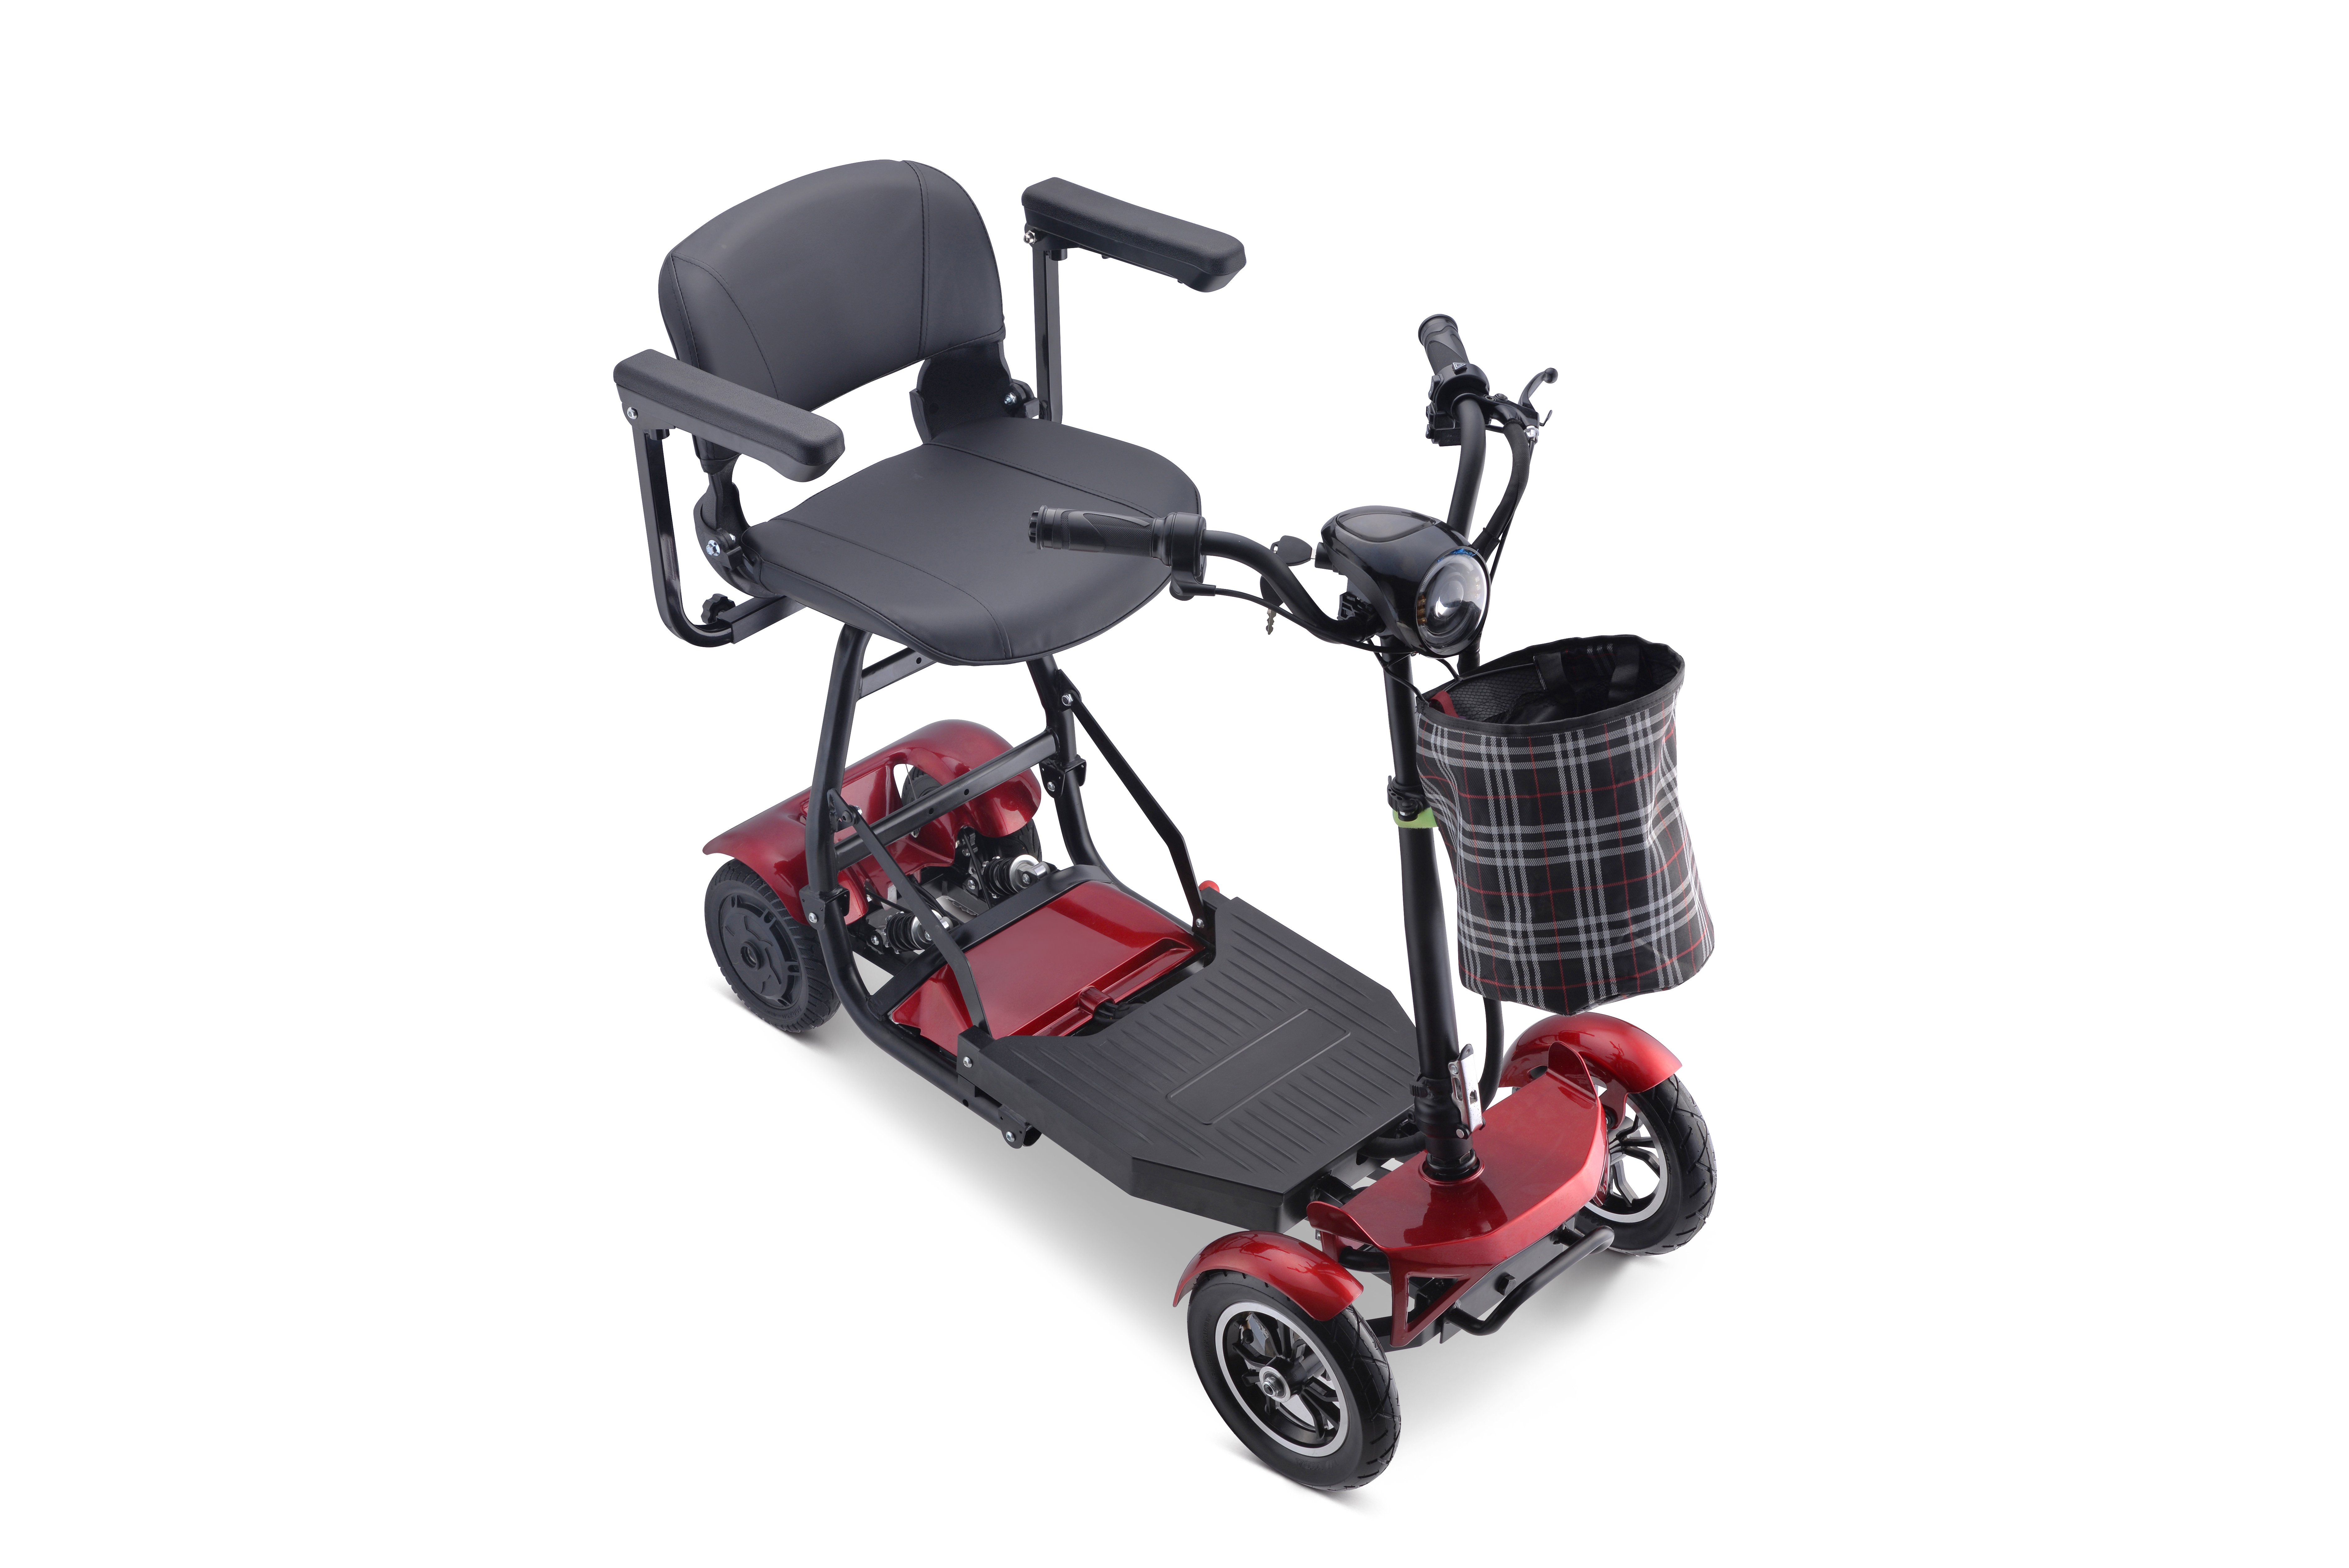 Nuevo scooter de movilidad plegable eléctrico de litio portátil para adultos, barato, scooter eléctrico de 4 ruedas para discapacitados Imagen destacada